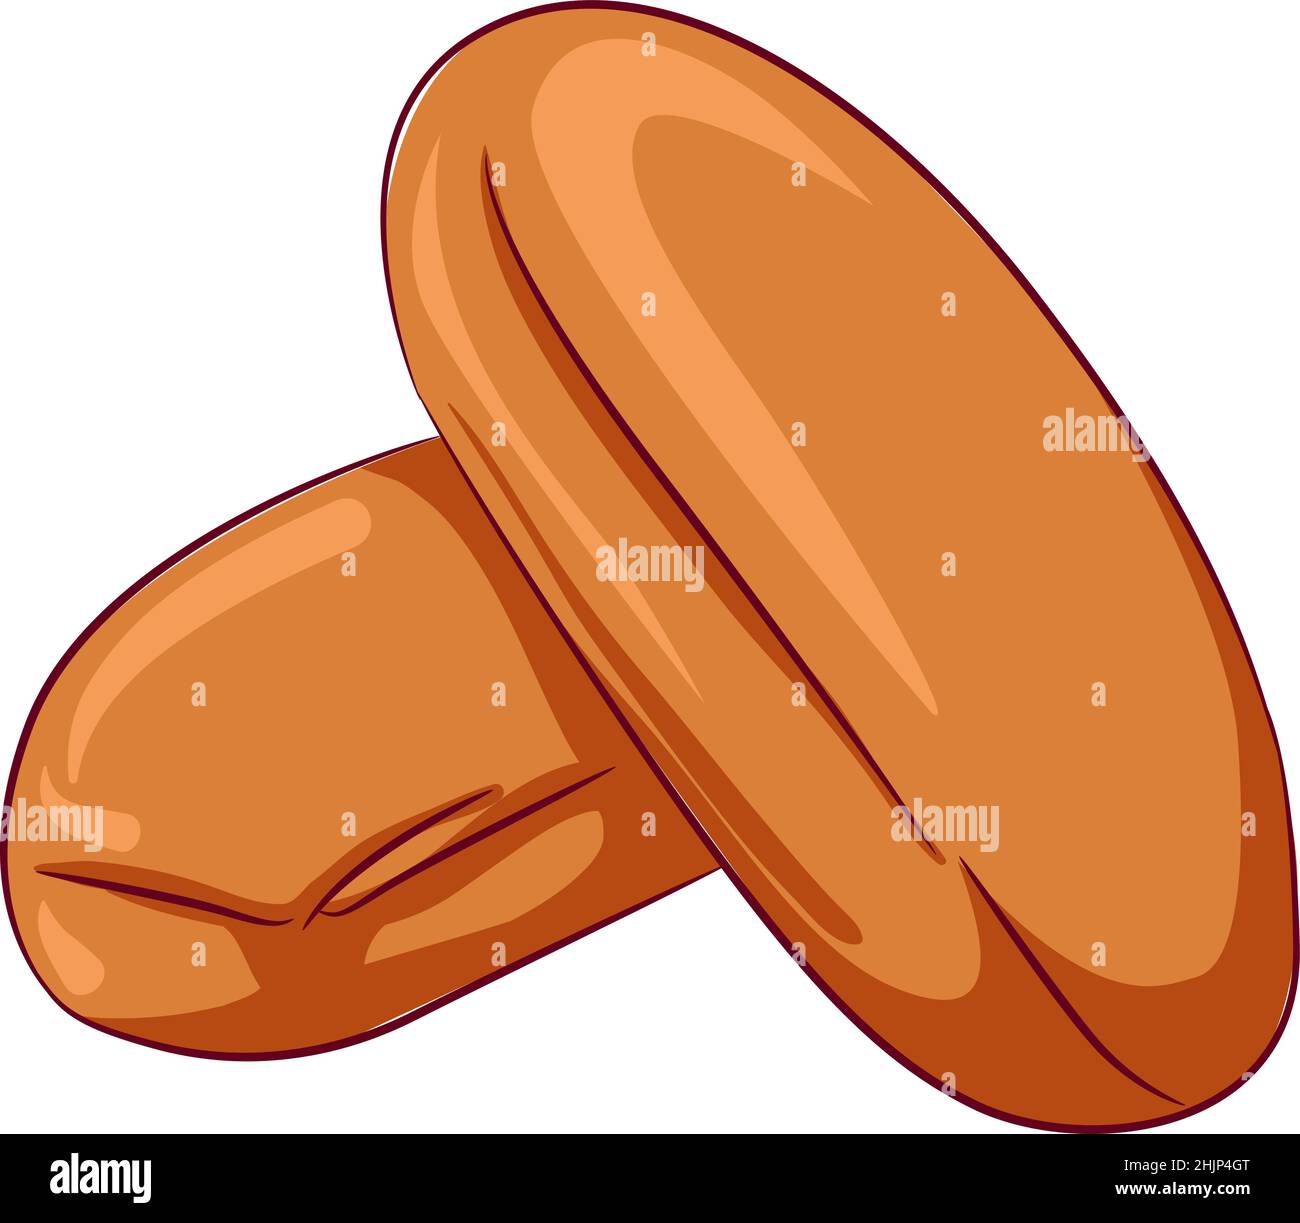 Illustrazione vettoriale del cartone animato di due panini isolati su bianco. Pasticceria fresca, pane al forno. Prodotti da forno icona cibo. Design per libro di cucina, ristorante bu Illustrazione Vettoriale